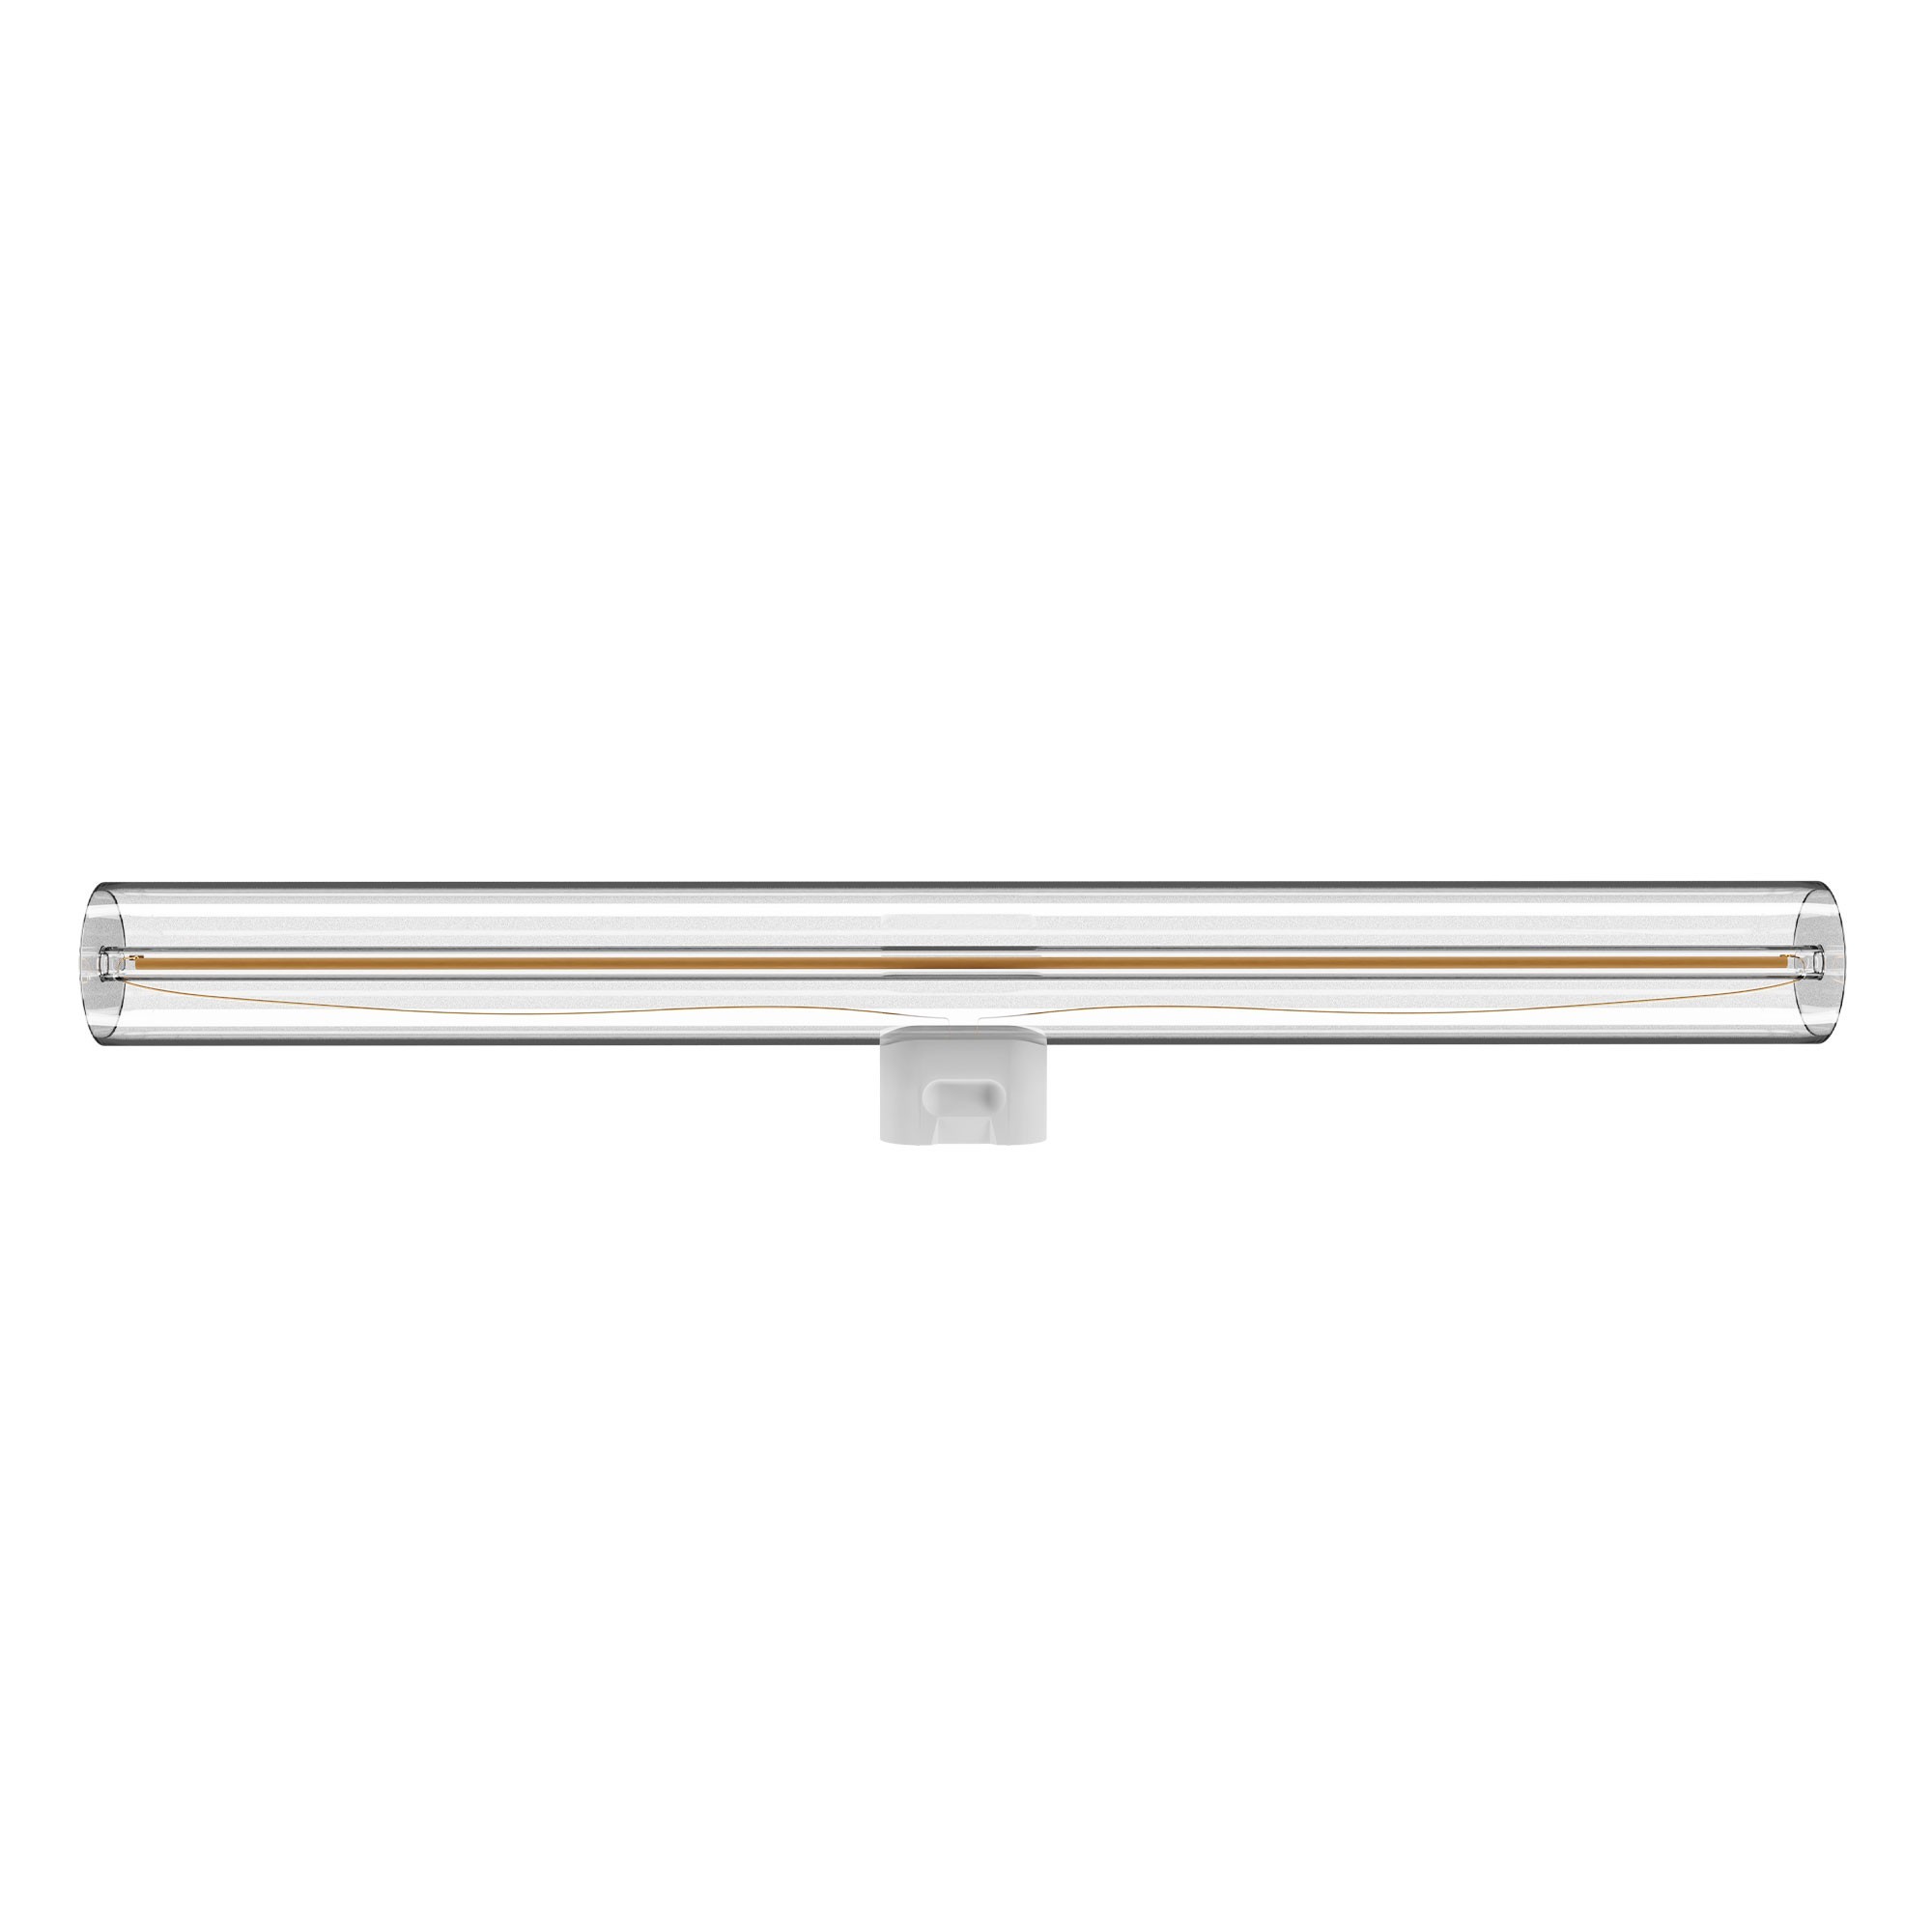 S01 - Ampoule LED linéaire L300, S14d, 6W, 2700K, 520Lm, avec verre transparent